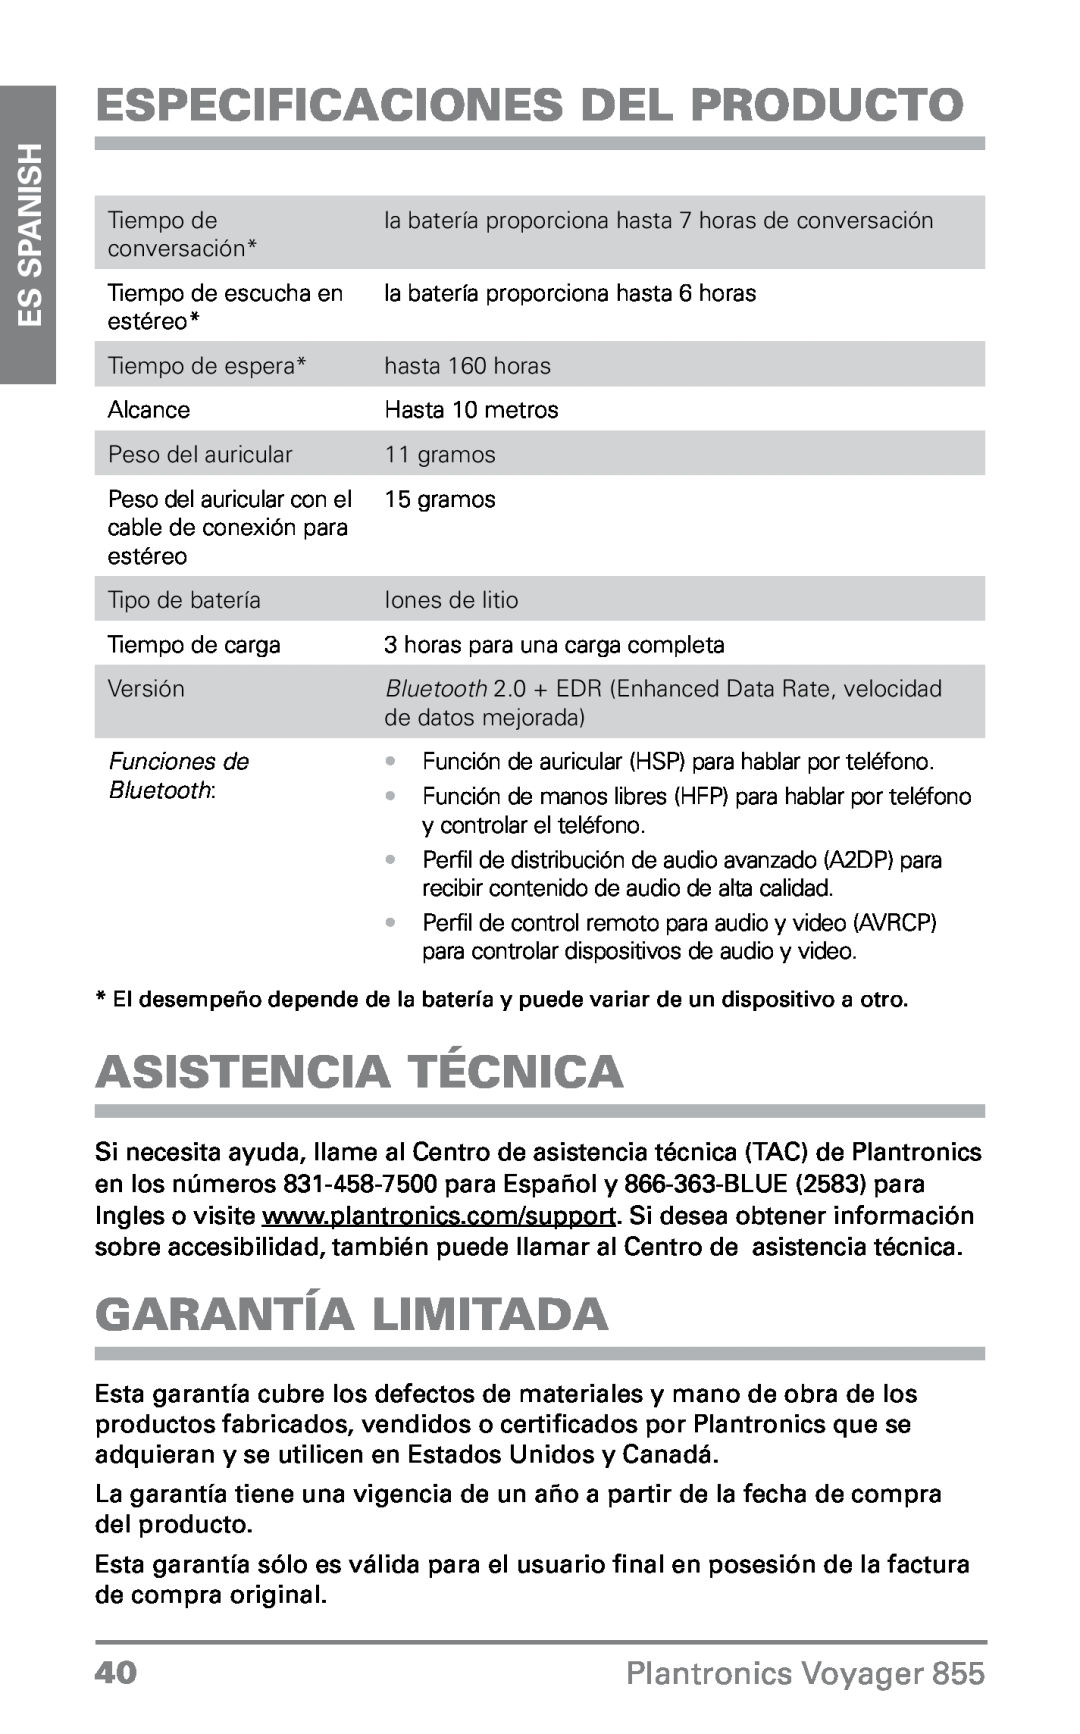 Plantronics VOYAGER855 manual Especificaciones del producto, Asistencia técnica, Garantía limitada, ES Spanish 